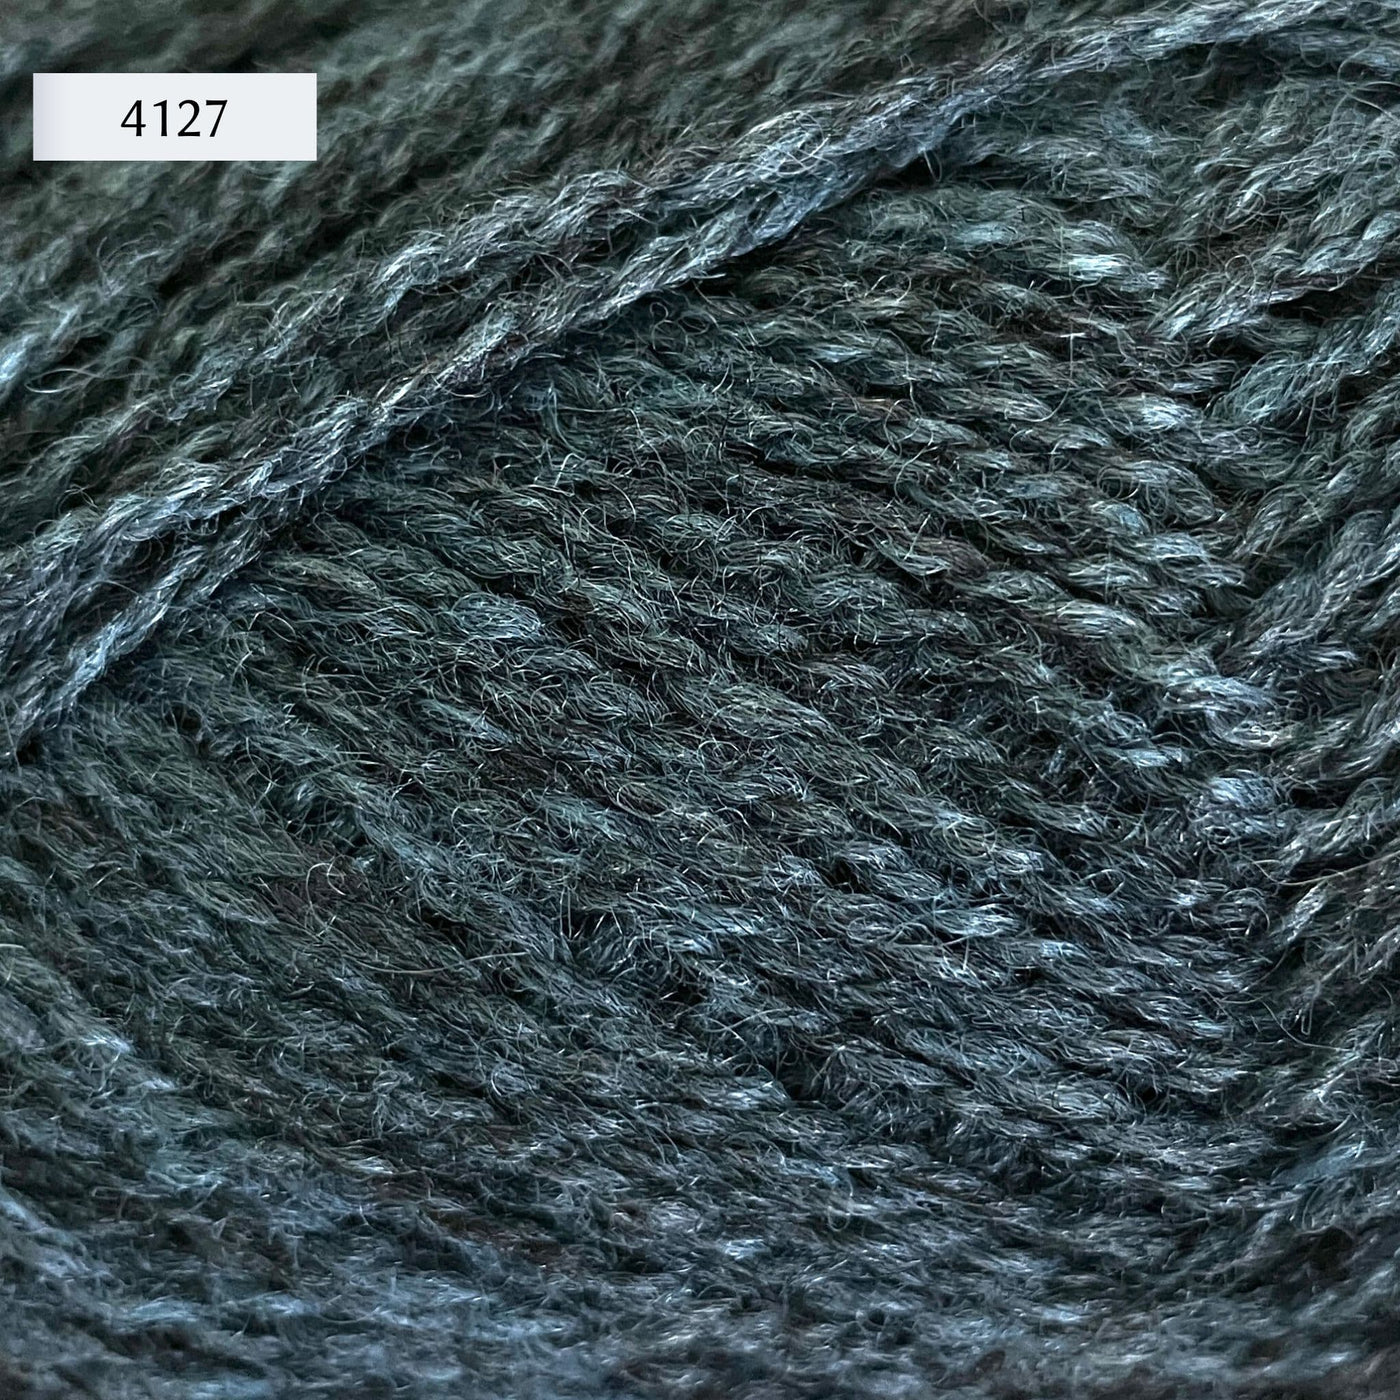 Rauma Finullgarn, a fingering/sport weight yarn, in color 4127, a heathered mid-tone petrol blue